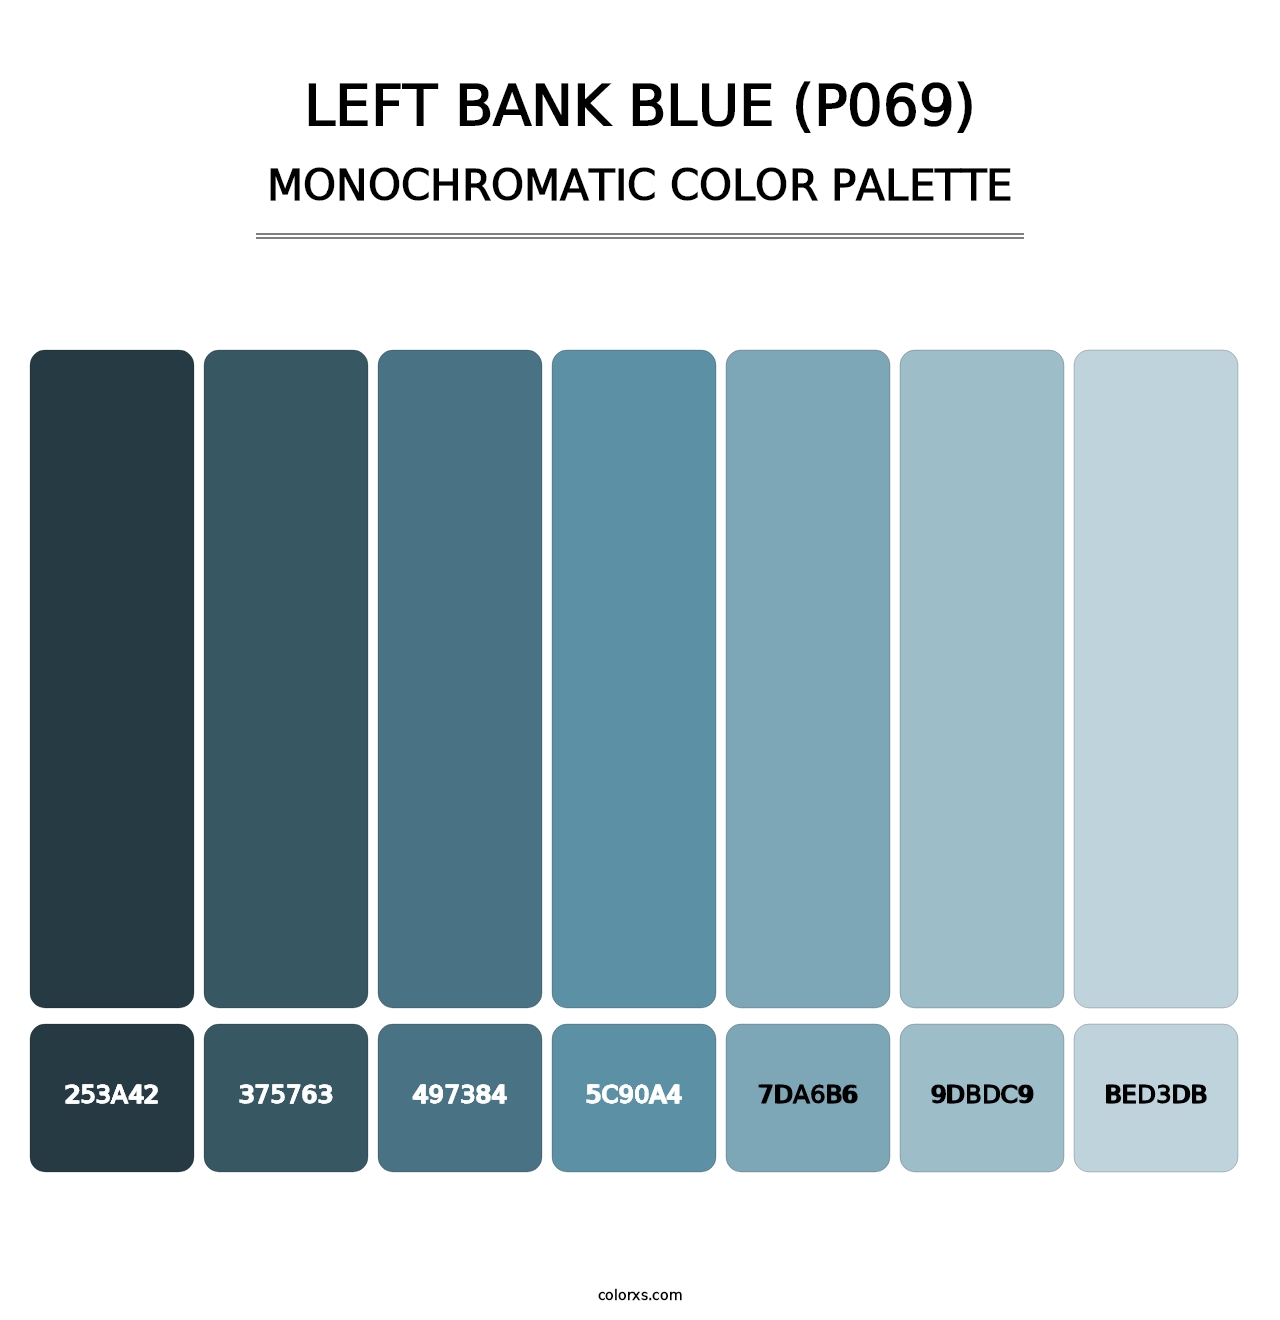 Left Bank Blue (P069) - Monochromatic Color Palette